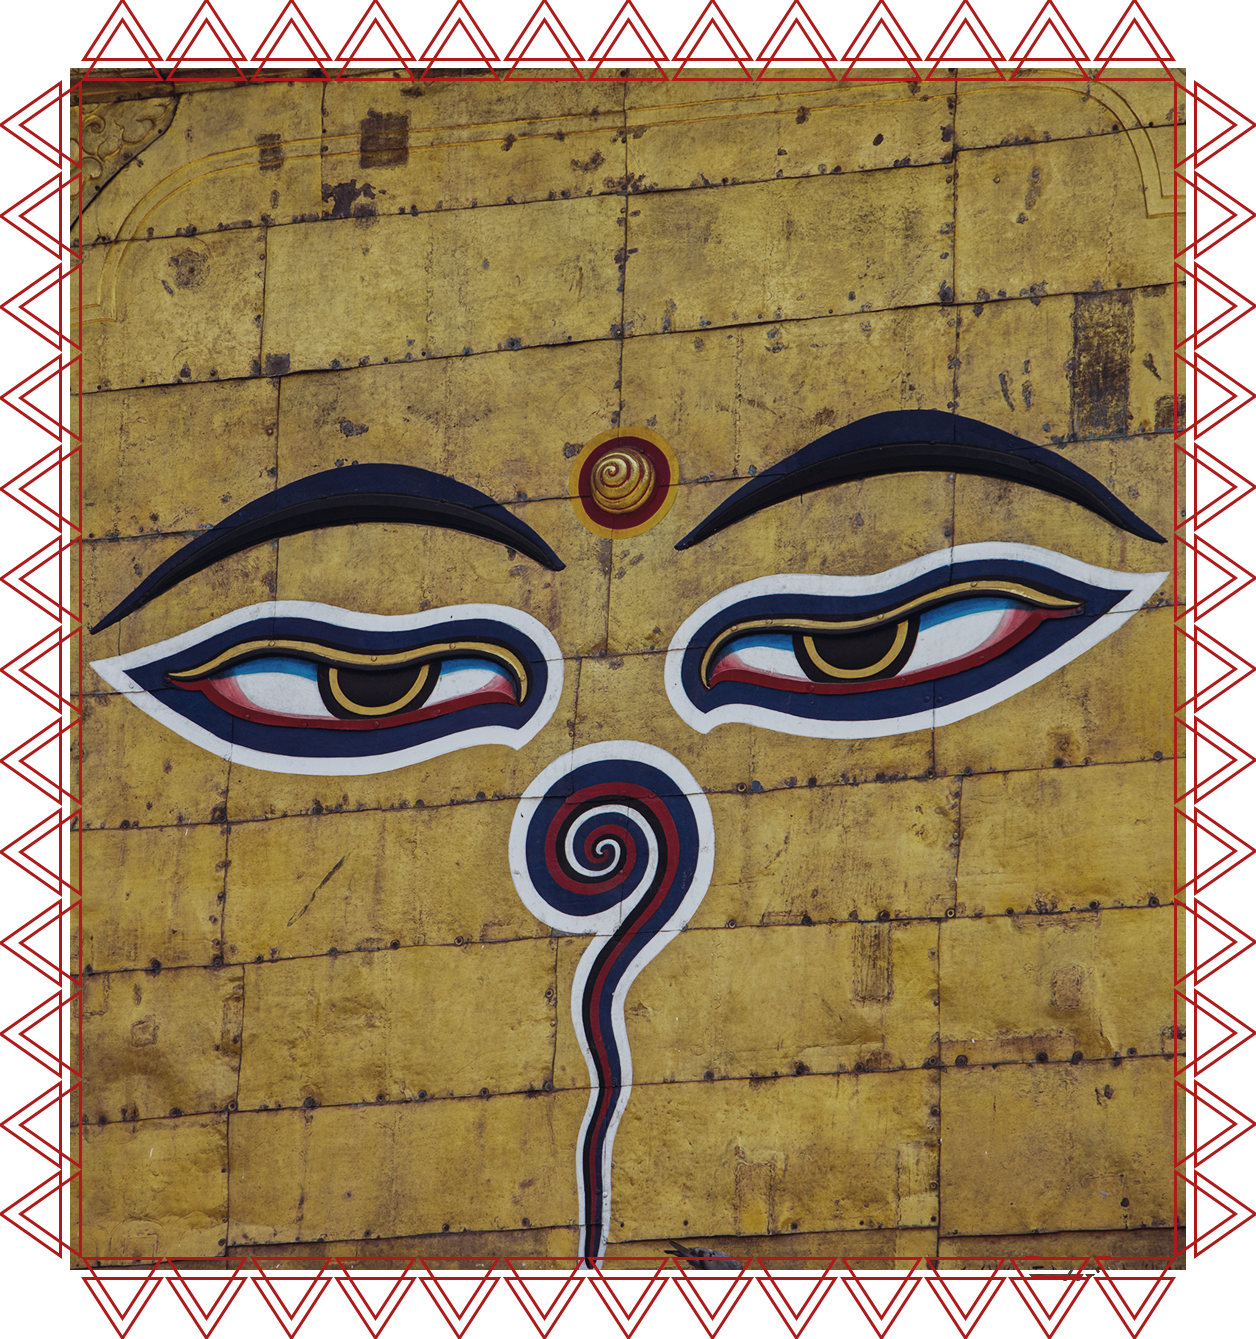 IACFS Schamanisches Wissen - Der Erleuchtung auf der Spur - Illustration des dritten Auges in Indien